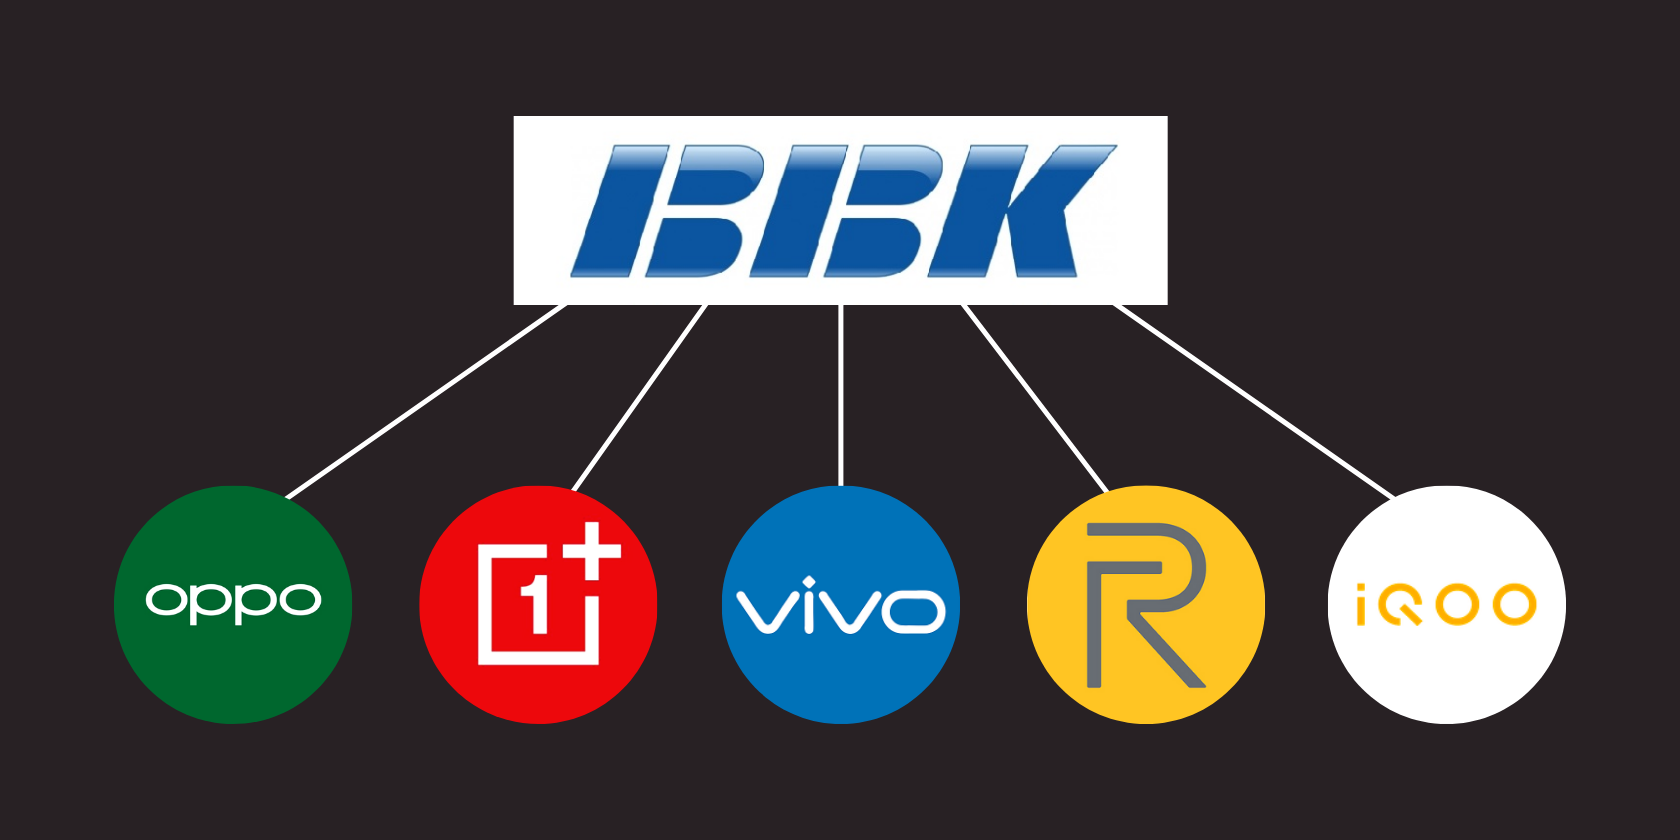 BBK-Electronics-Subsidiaries